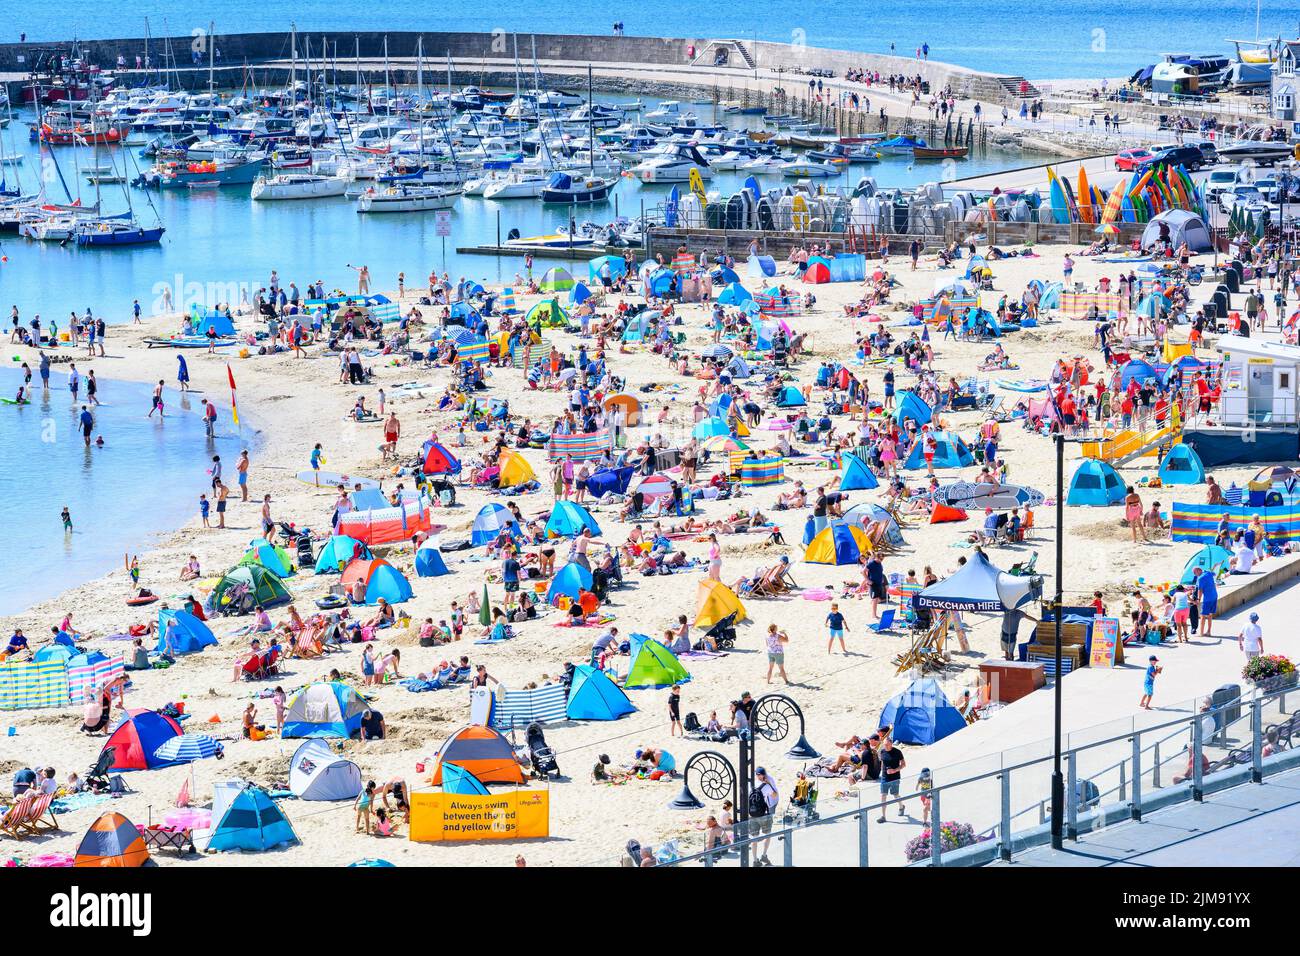 Lyme Regis, Dorset, Reino Unido. 5th de Ago de 2022. Clima en el Reino Unido: Las multitudes de turistas y bañistas acuden a la playa para disfrutar del sol abrasador en la localidad costera de Lyme Regis. Crédito: Celia McMahon/Alamy Live News Foto de stock